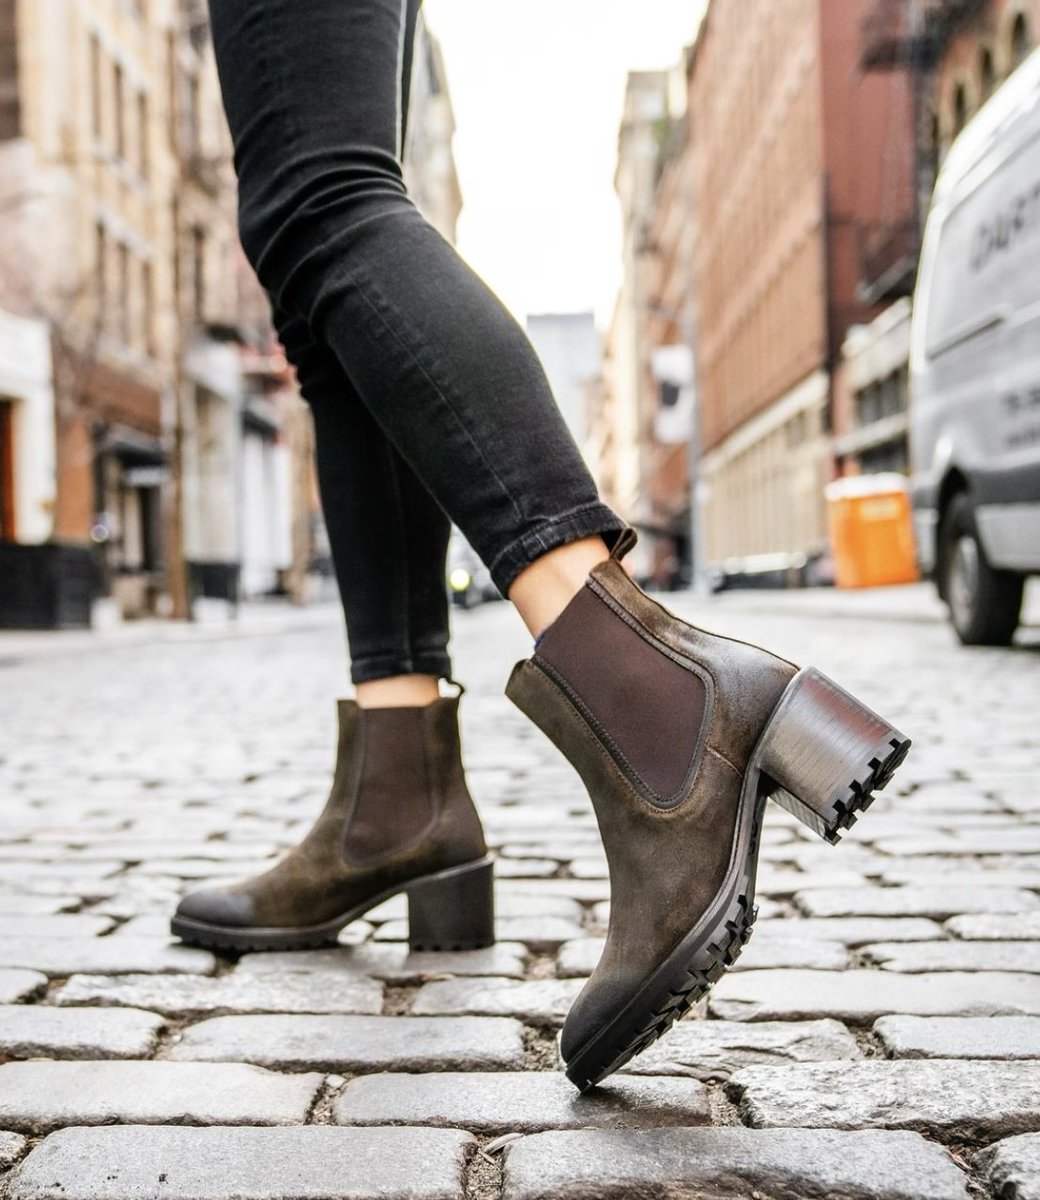 Chunky Heels 🤝 Cobblestones
📸: @ishgarrido
#ThursdayBoots #WomensHeels 
#SuedeBoots #WinterEssentials